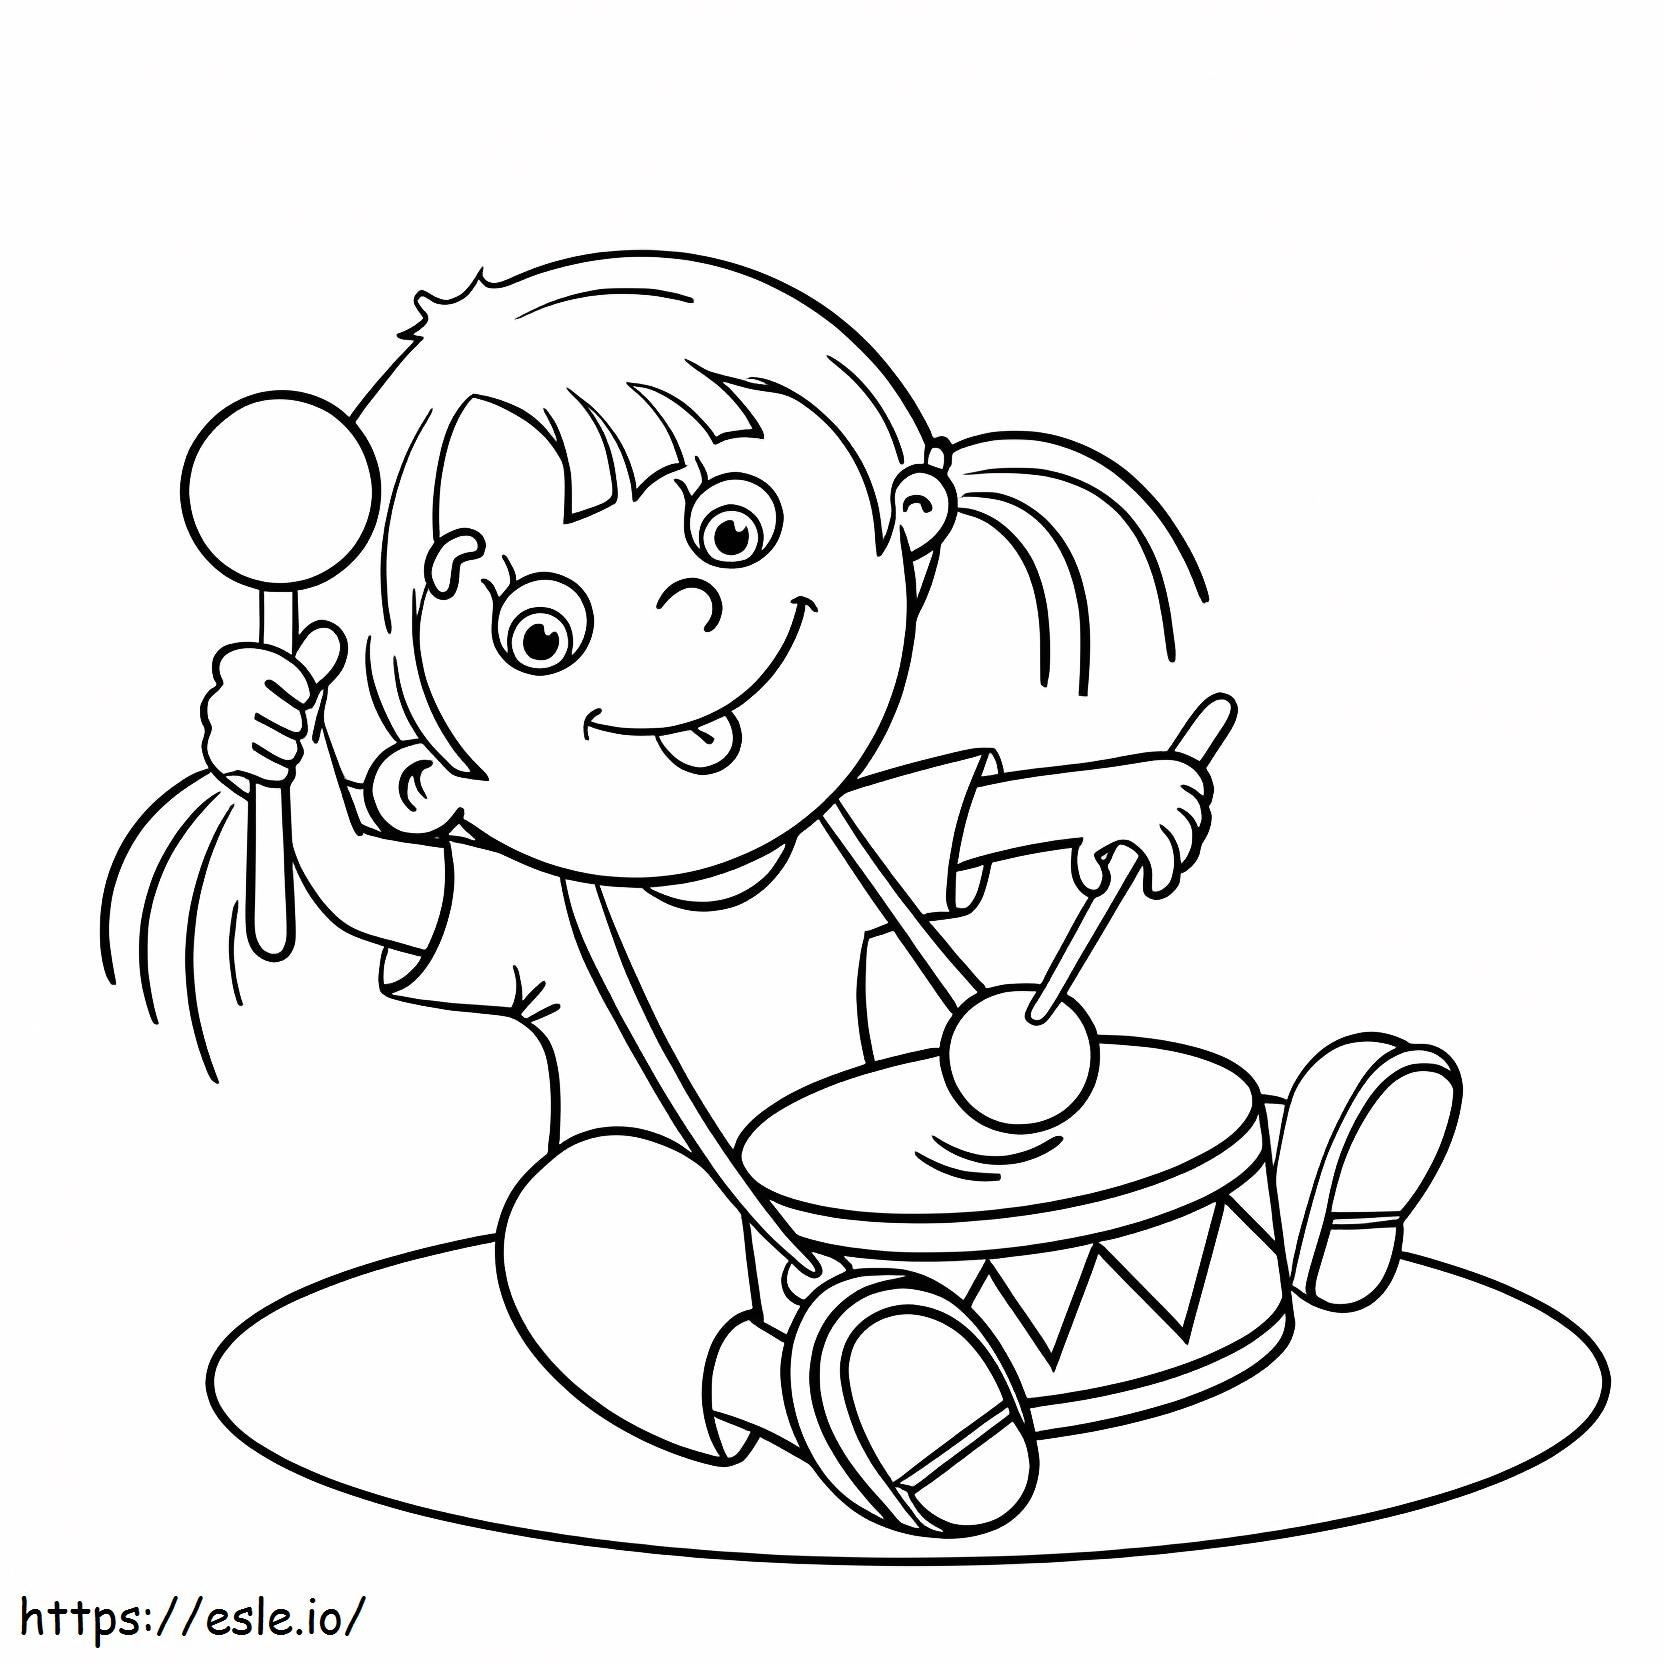 Coloriage Fille jouant du tambour à imprimer dessin